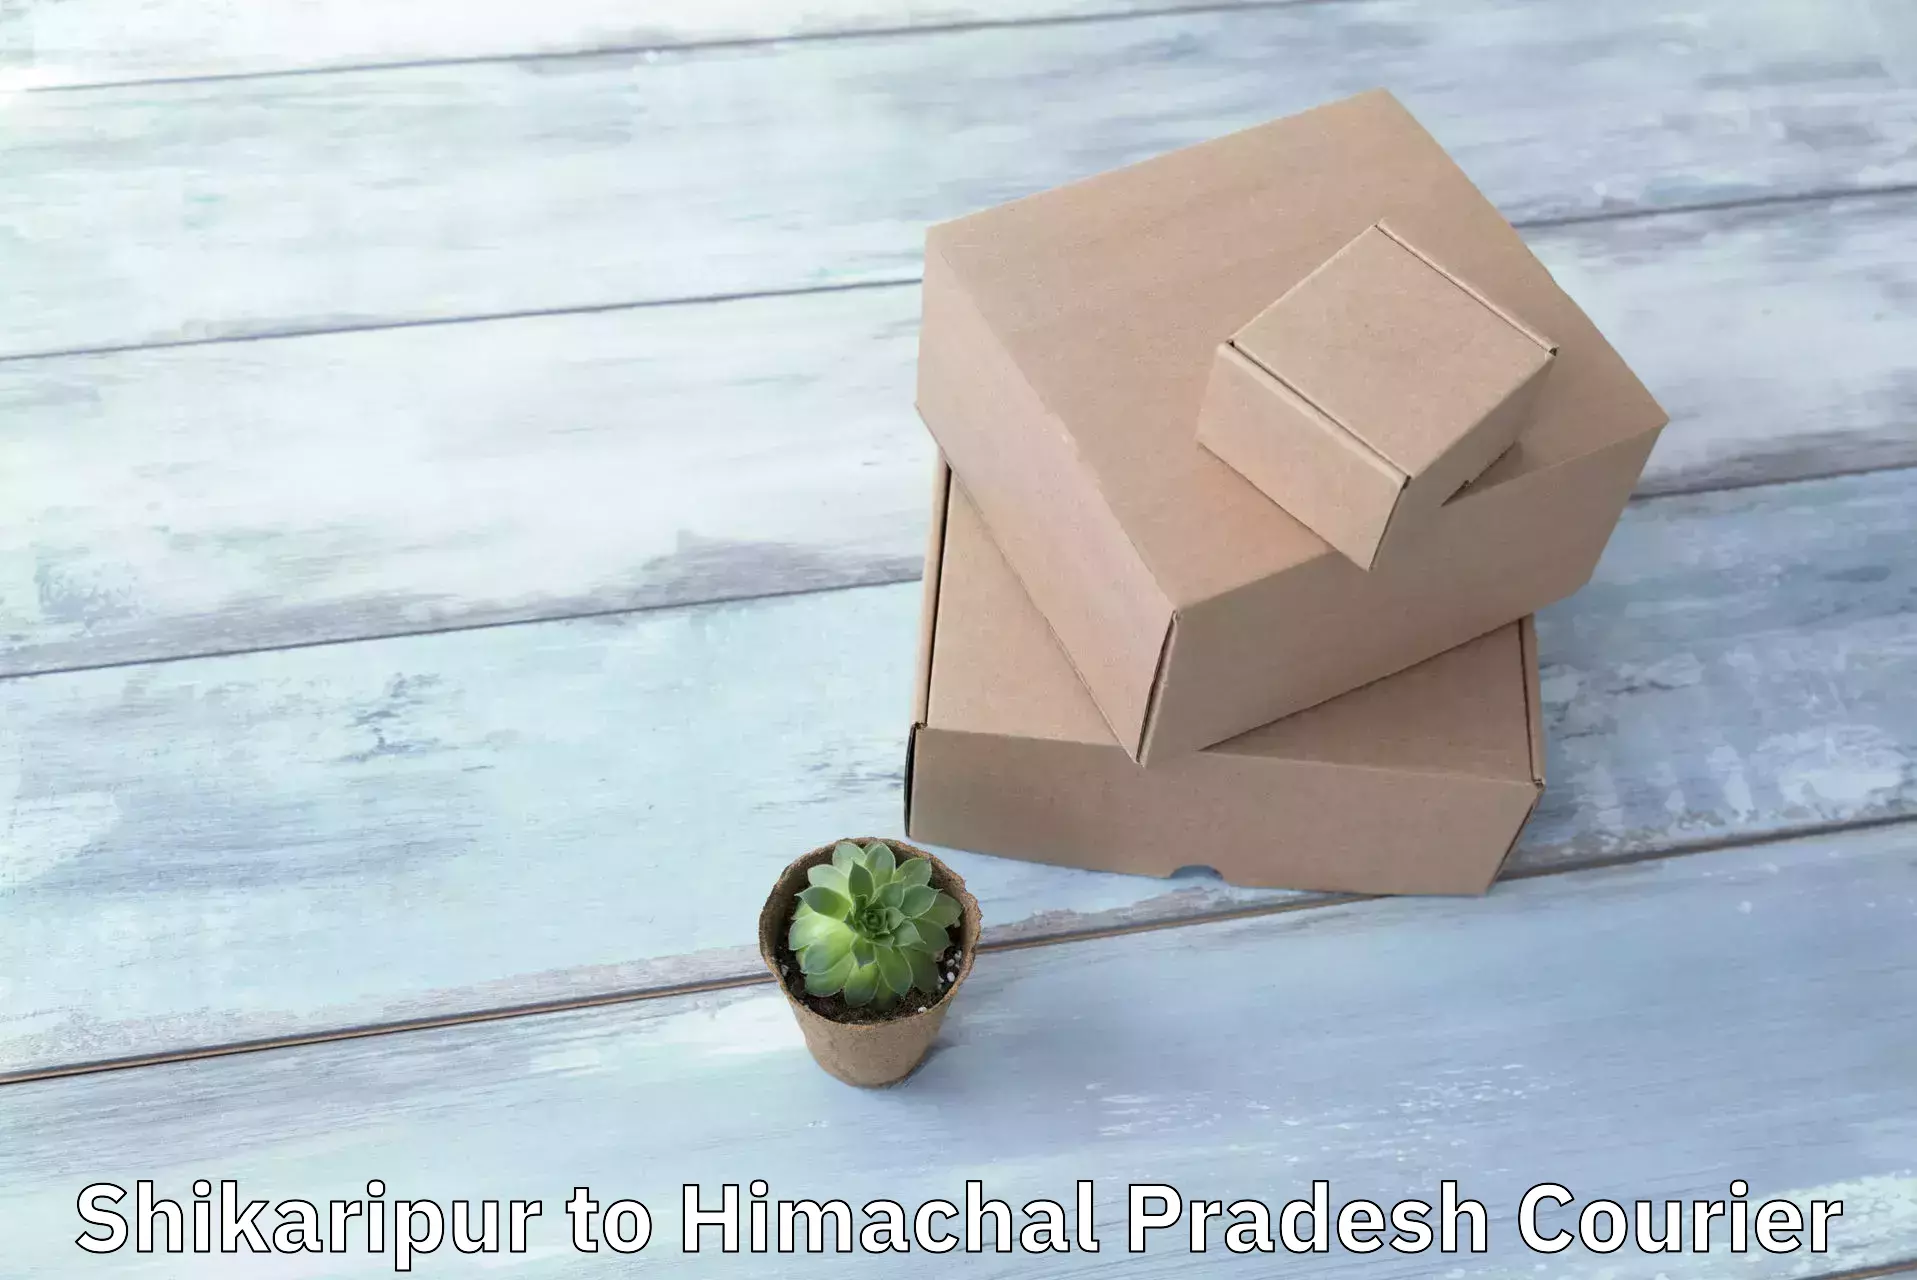 Fast shipping solutions Shikaripur to Himachal Pradesh